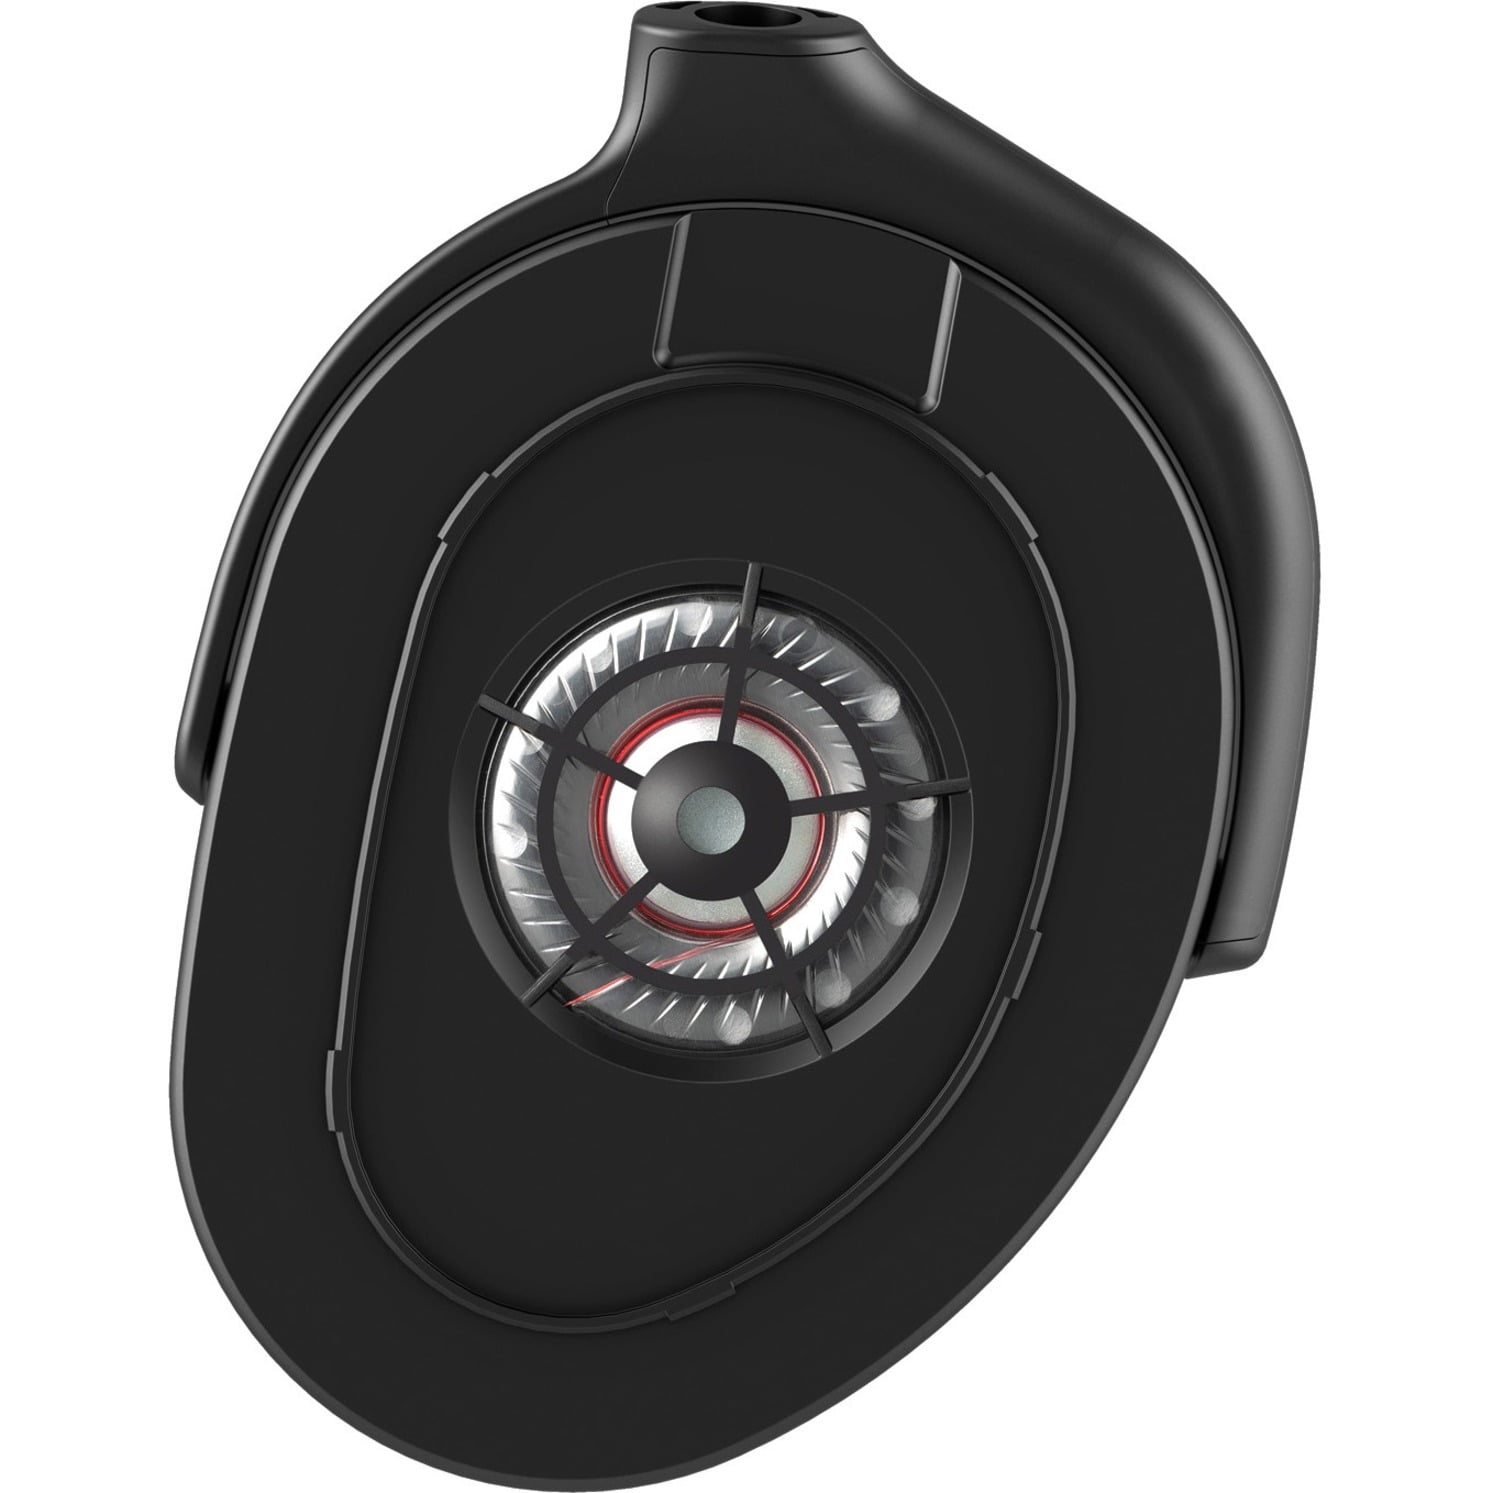 JVC GG-01 Gaming Headset, Black - Walmart.com